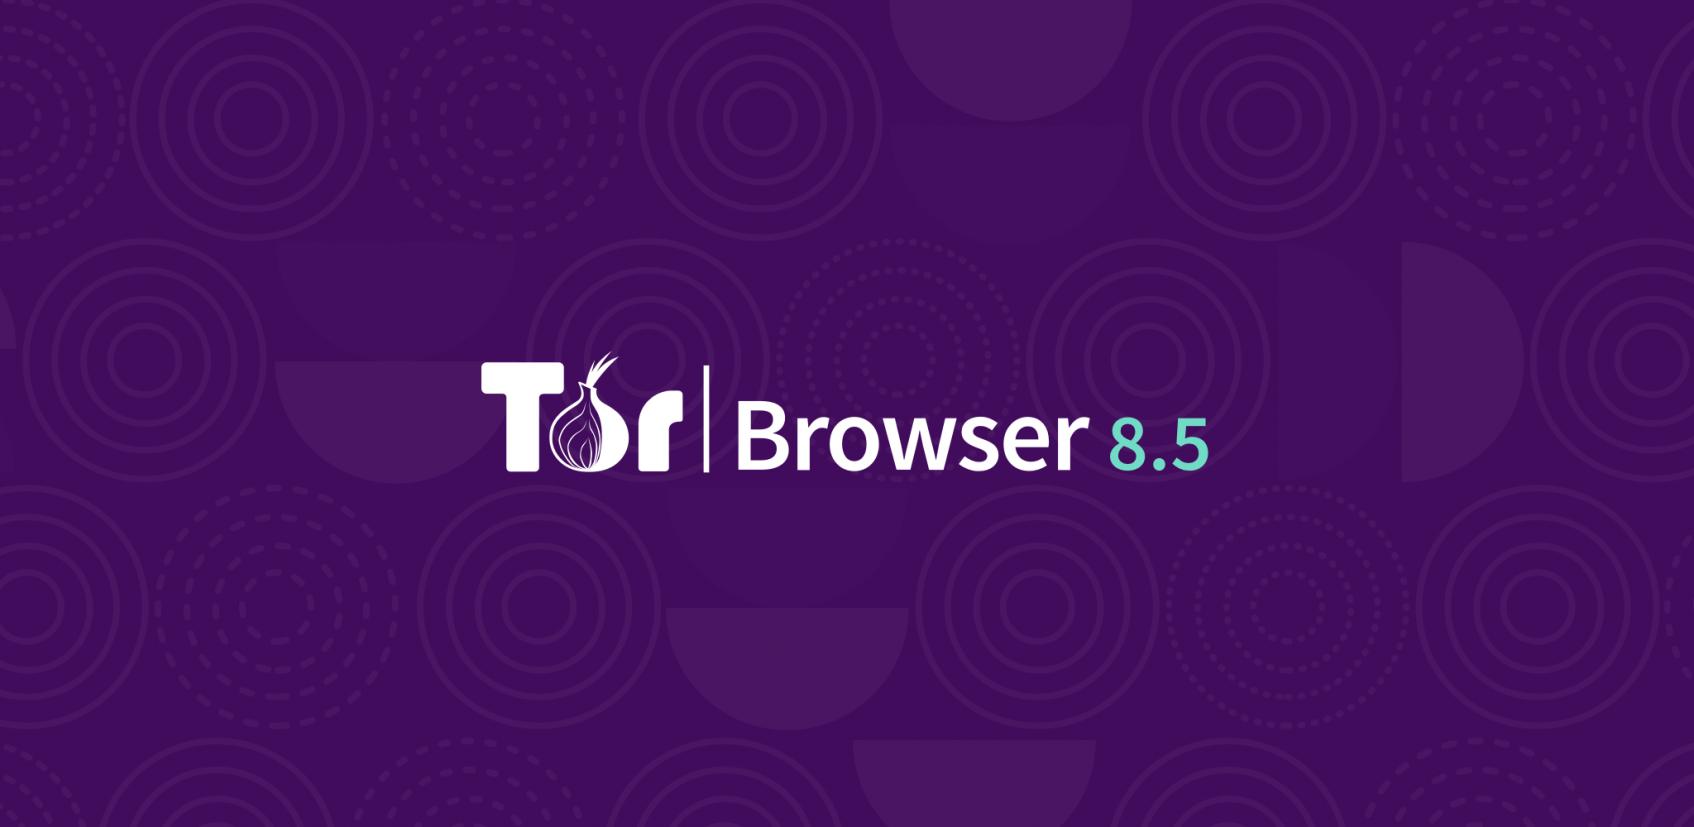 Tor browser soft hidra как настроить мосты тор браузер